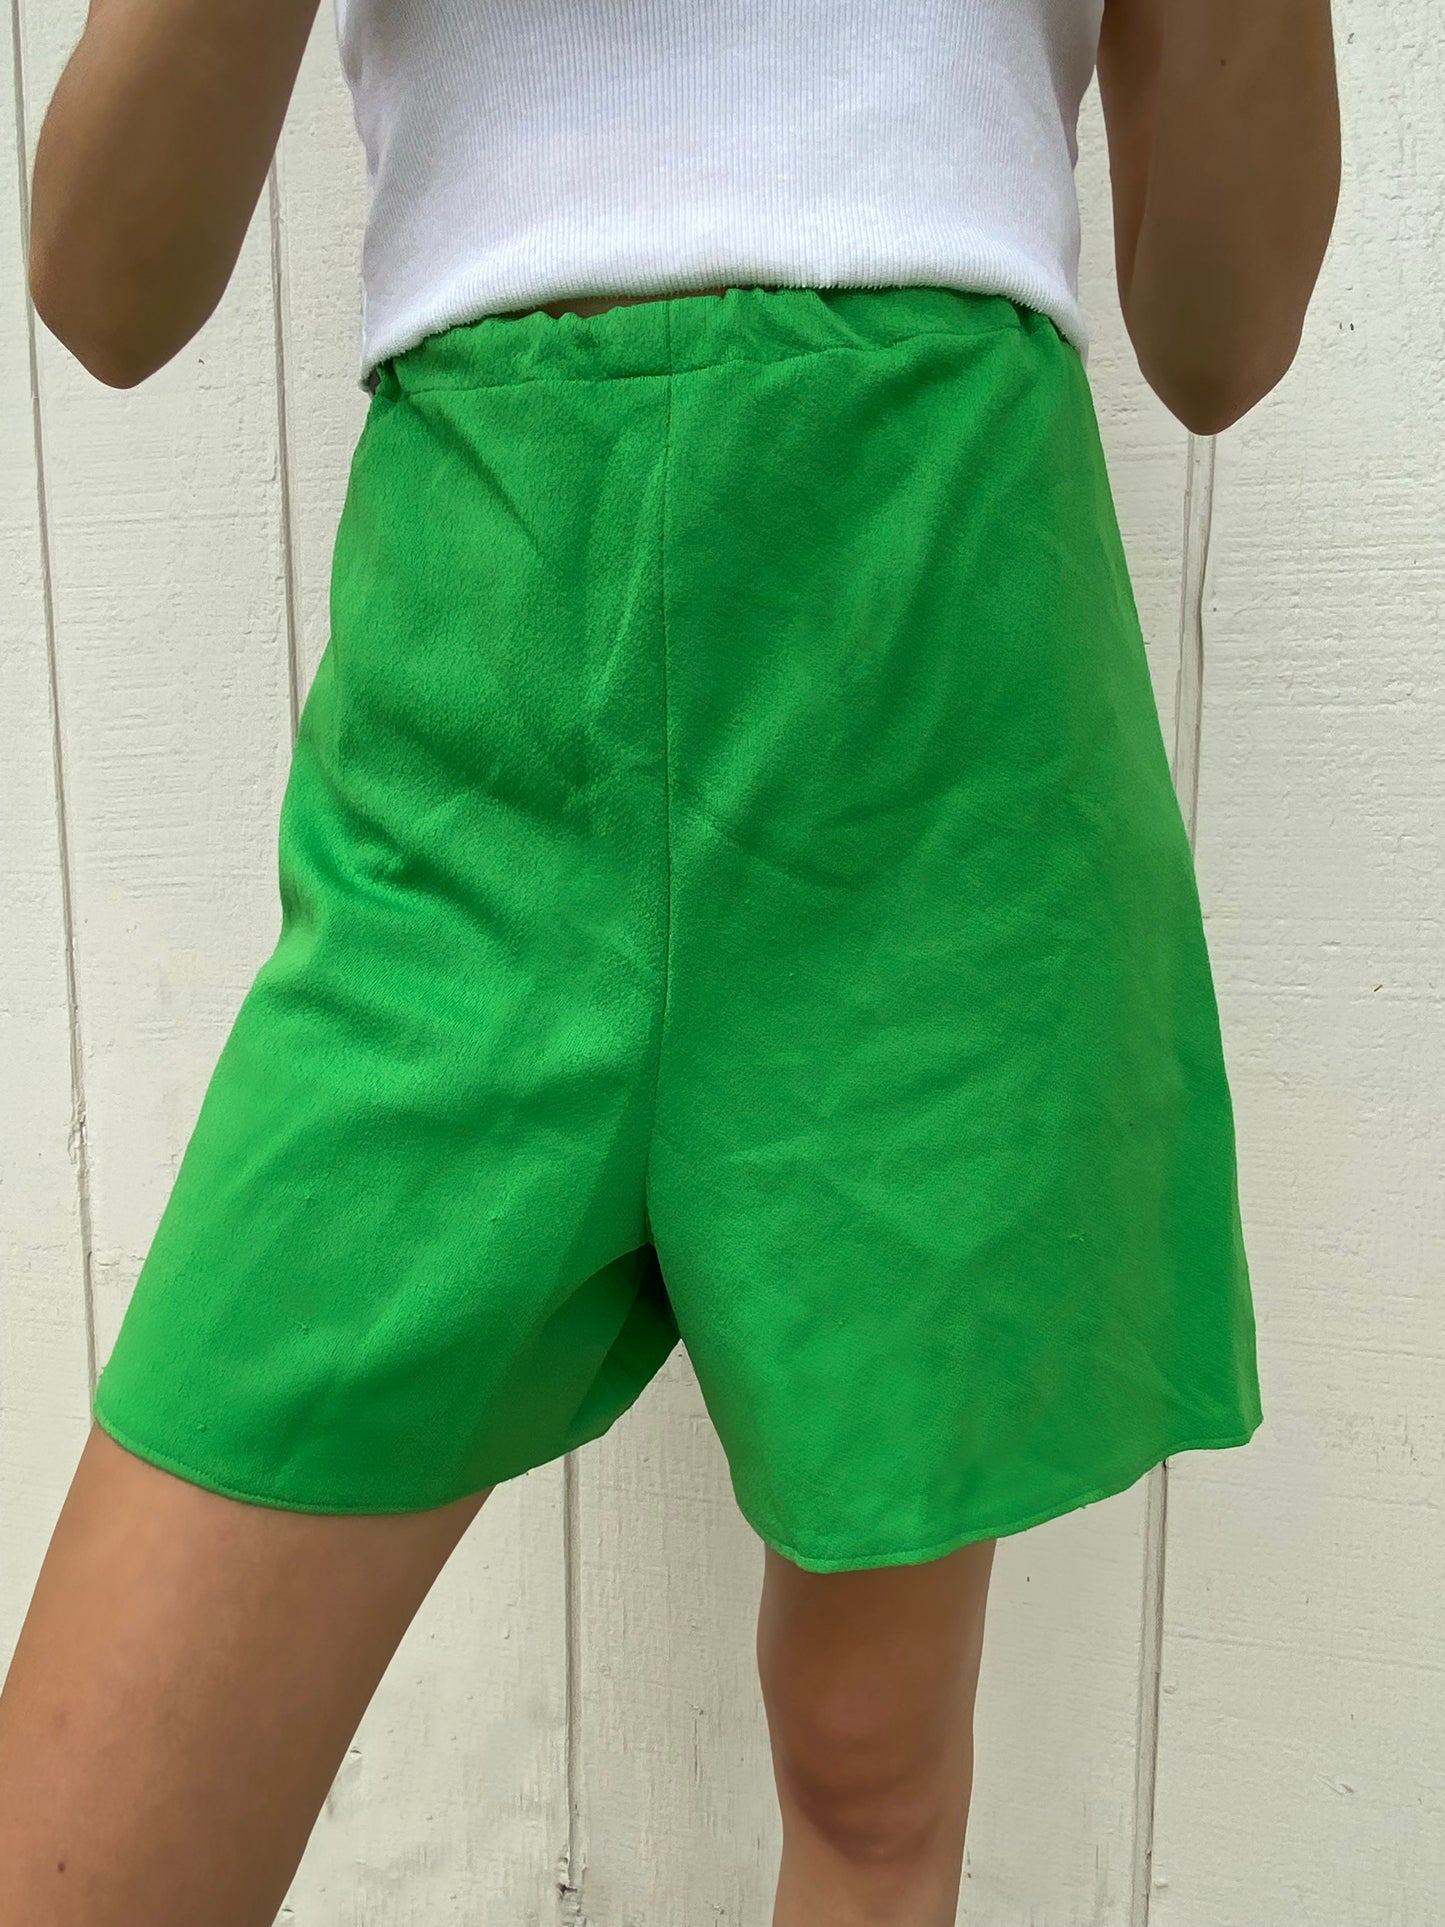 Green Casual Shorts - 26"